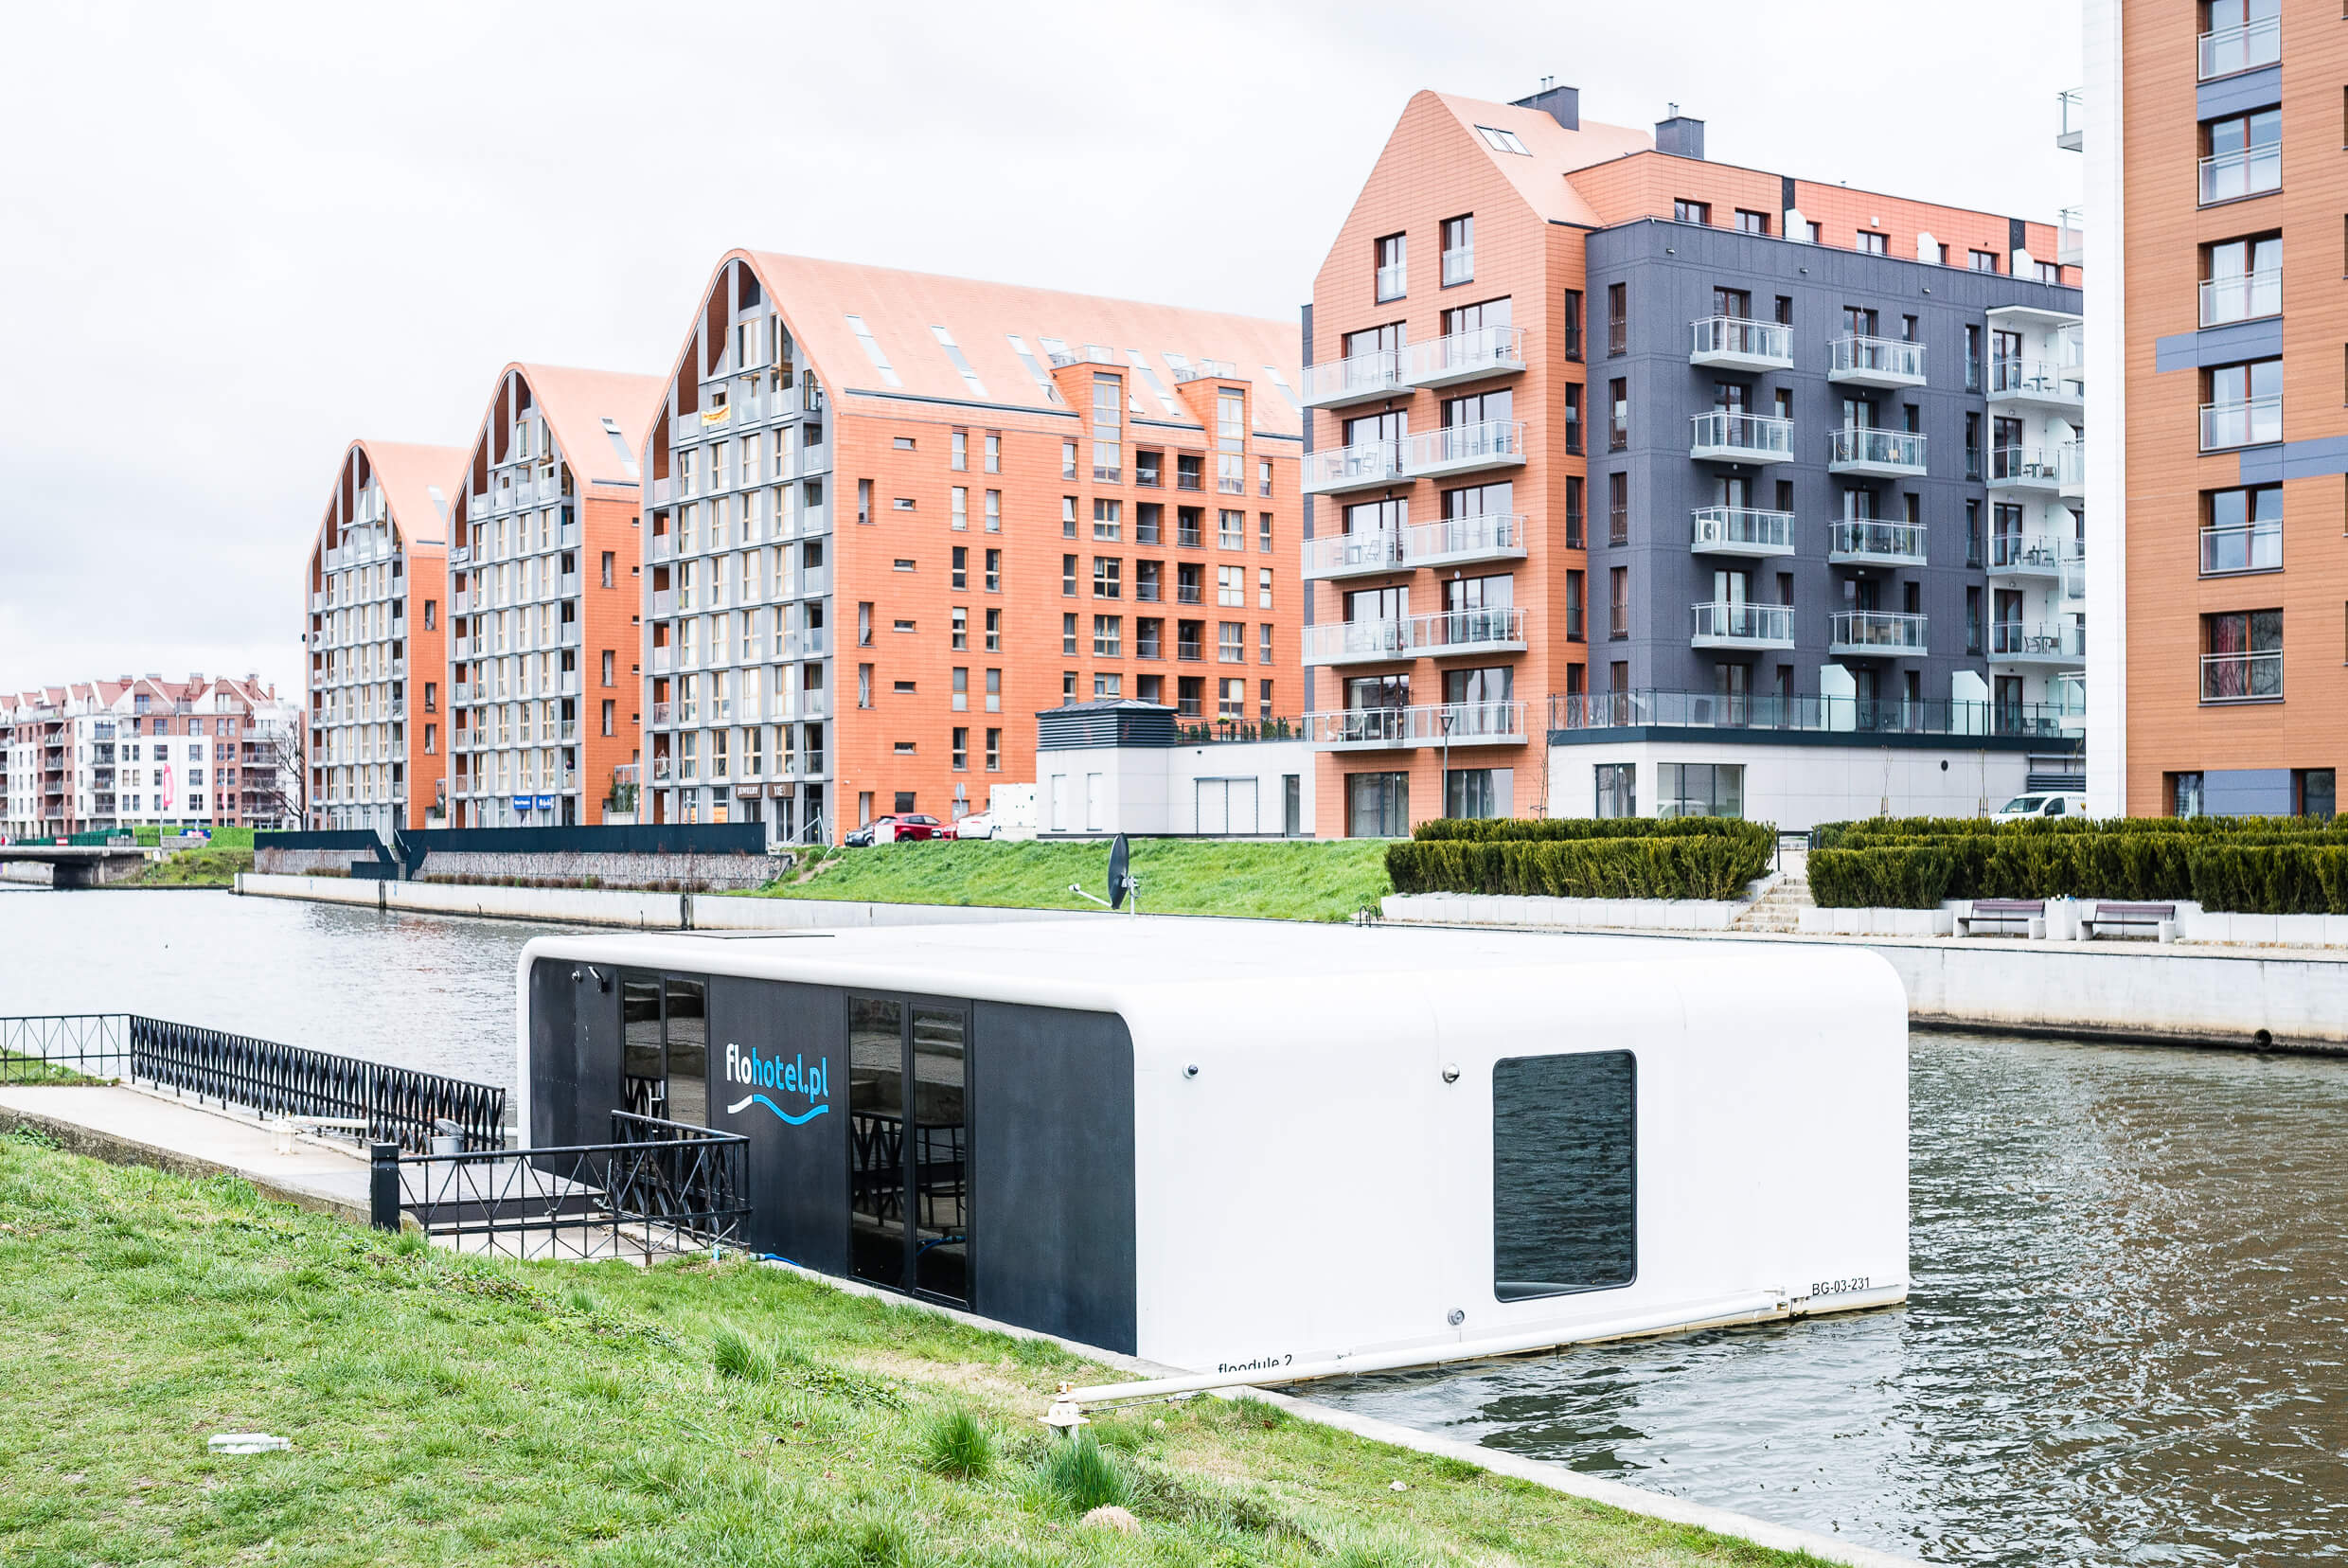 LUK 4884 - Flohotel – futurystyczny hotel na wodzie